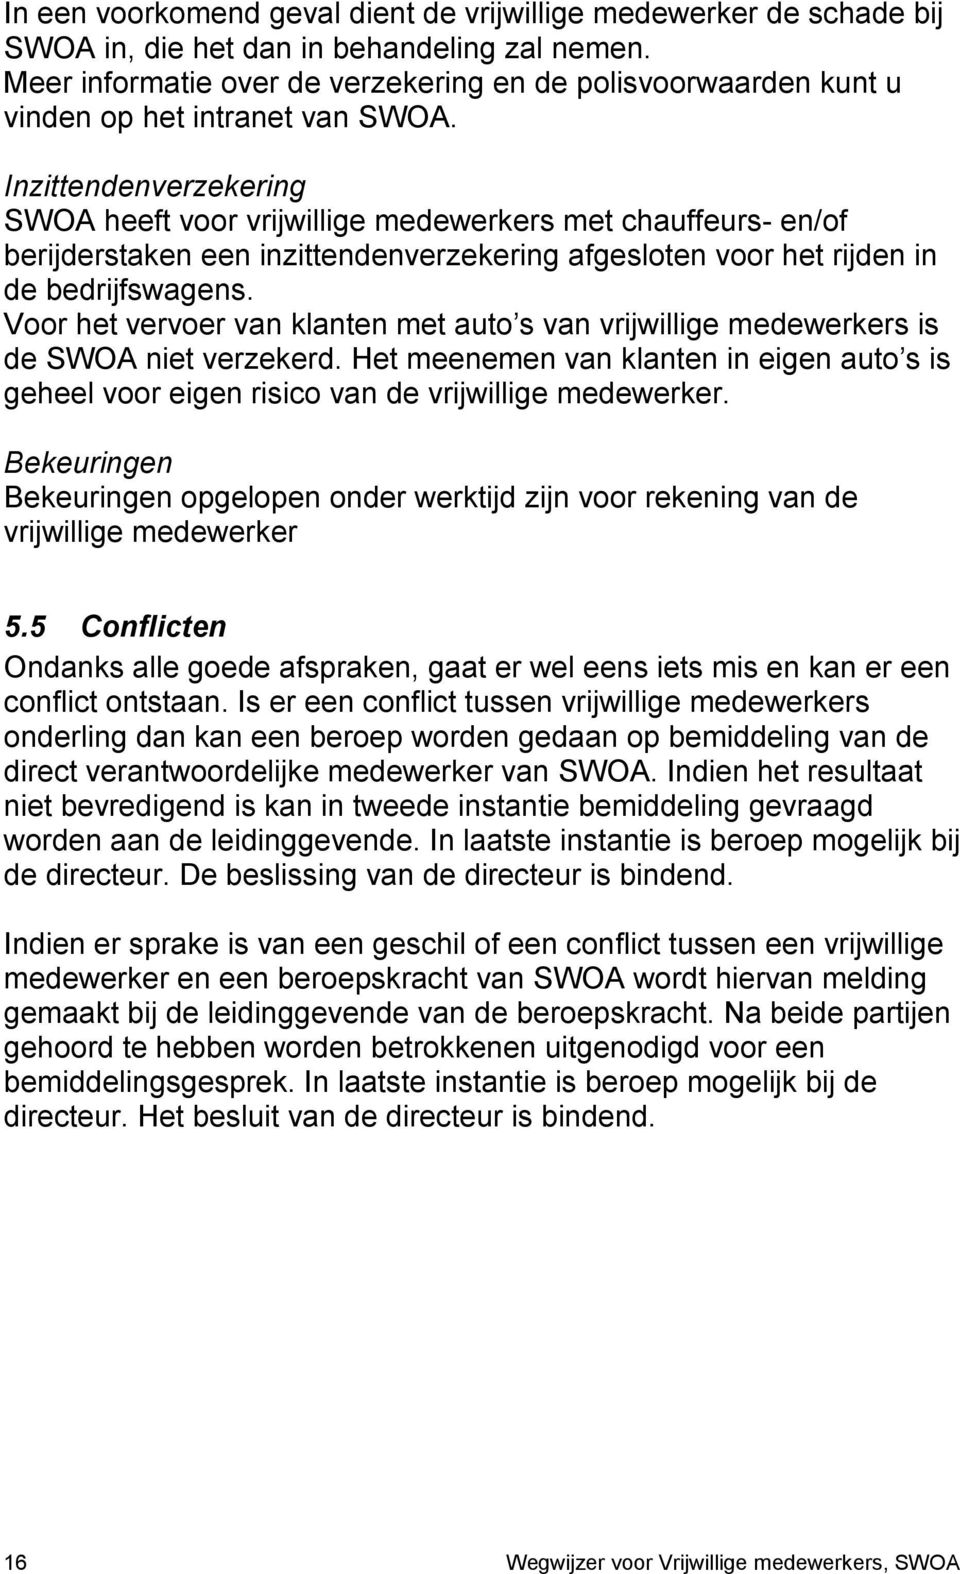 Inzittendenverzekering SWOA heeft voor vrijwillige medewerkers met chauffeurs- en/of berijderstaken een inzittendenverzekering afgesloten voor het rijden in de bedrijfswagens.